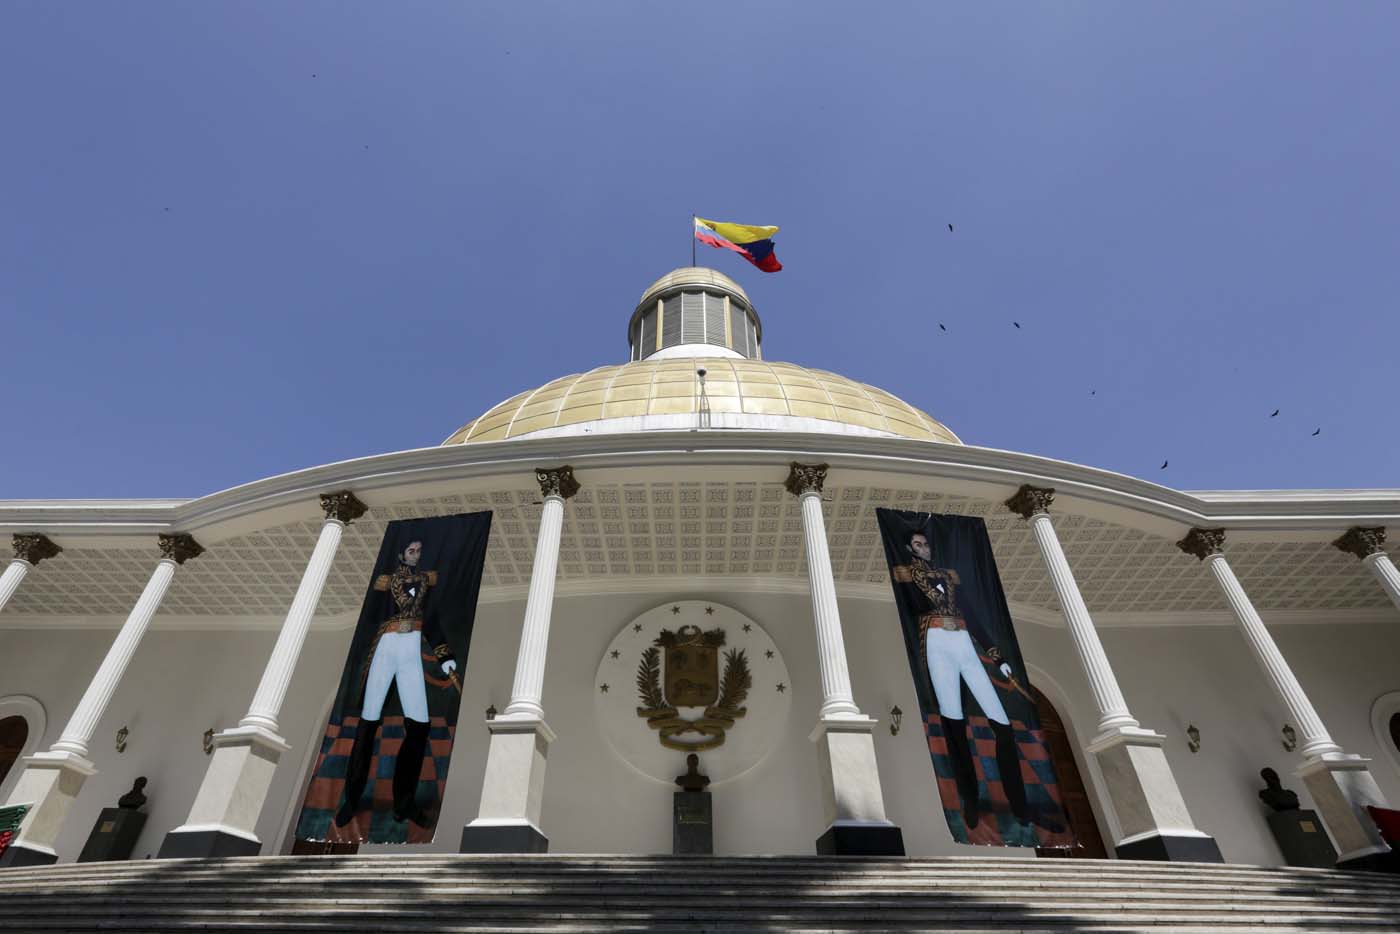 Expertos internacionales analizarán proceso para la recuperación de capitales en Venezuela